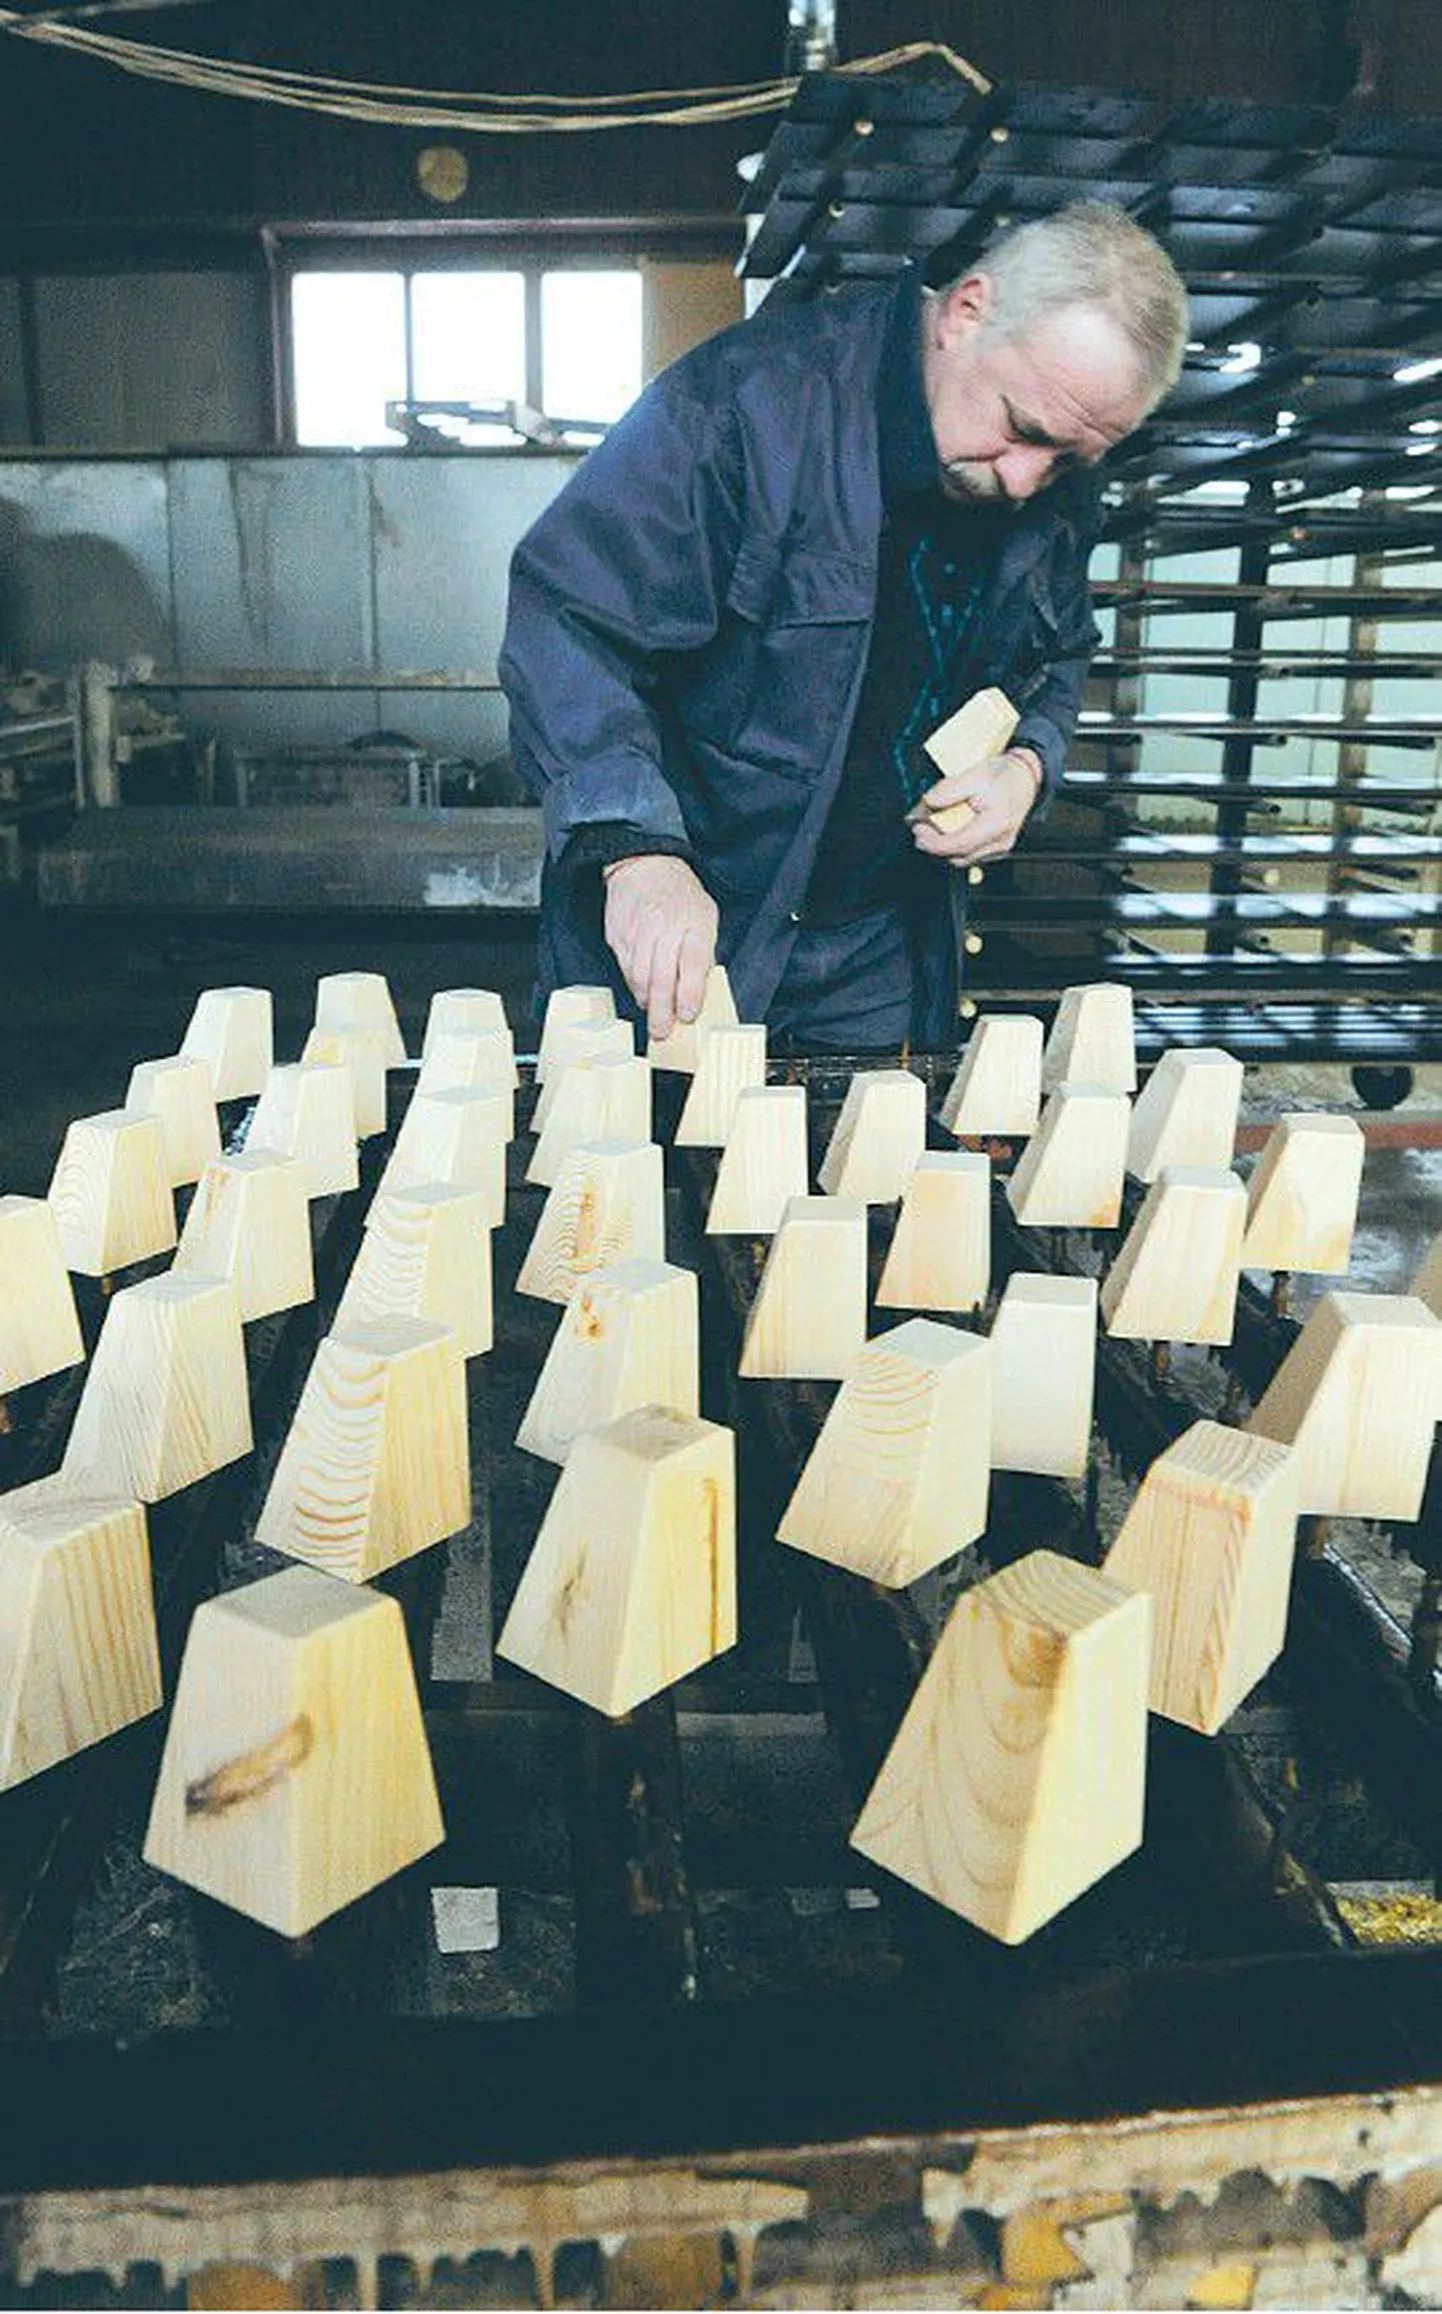 Mainorile kuuluv Askala, mis valmistab täispuidust mööblit, saadab enamuse toodangust Eestist välja ja kavandab koguni tootmise kasvu.